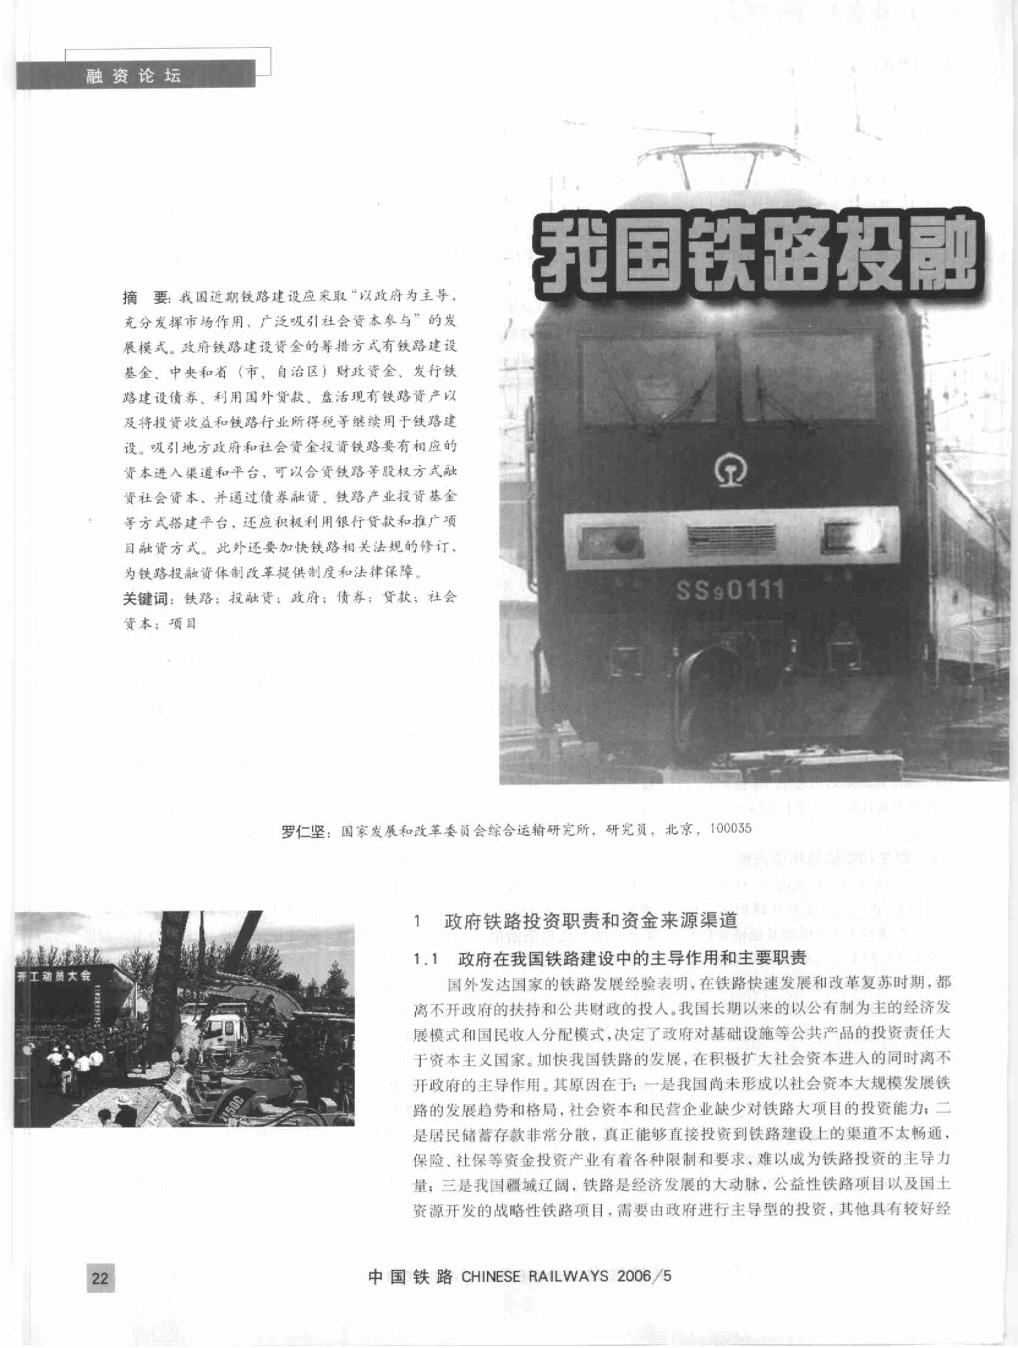 铁路混合所有制改革_中国铁路总公司将进行混合所有制改革_中国铁路总公司改革